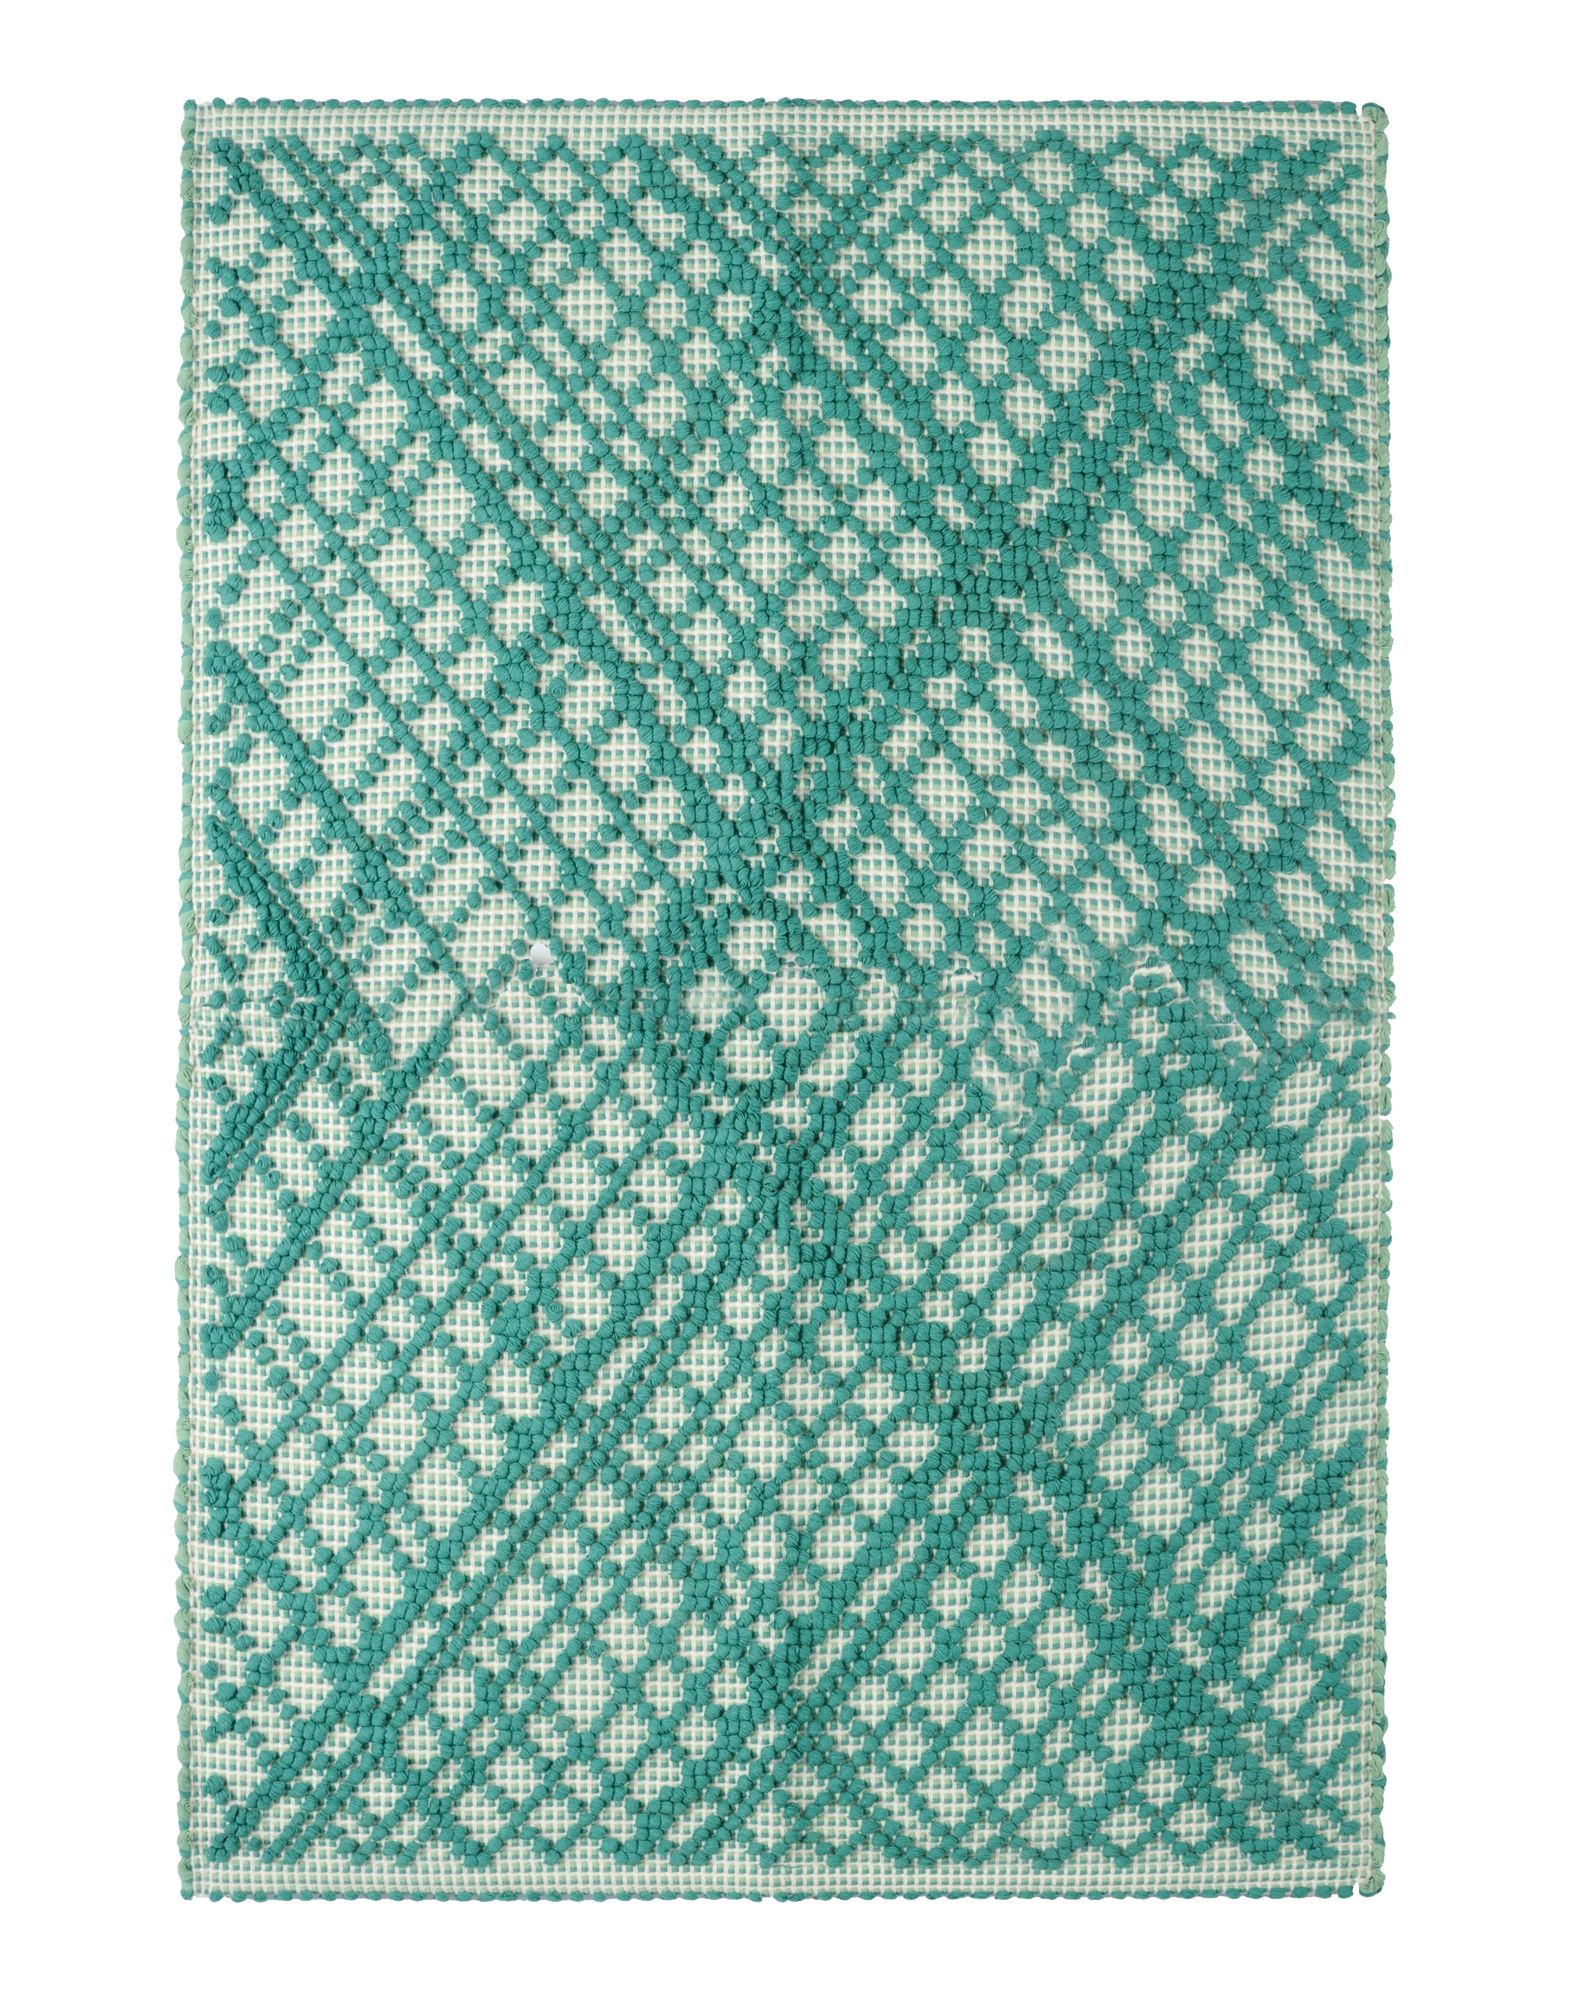 Ilaria.I Tp Carpet   Rug   Design Ilaria.I   58027849WV